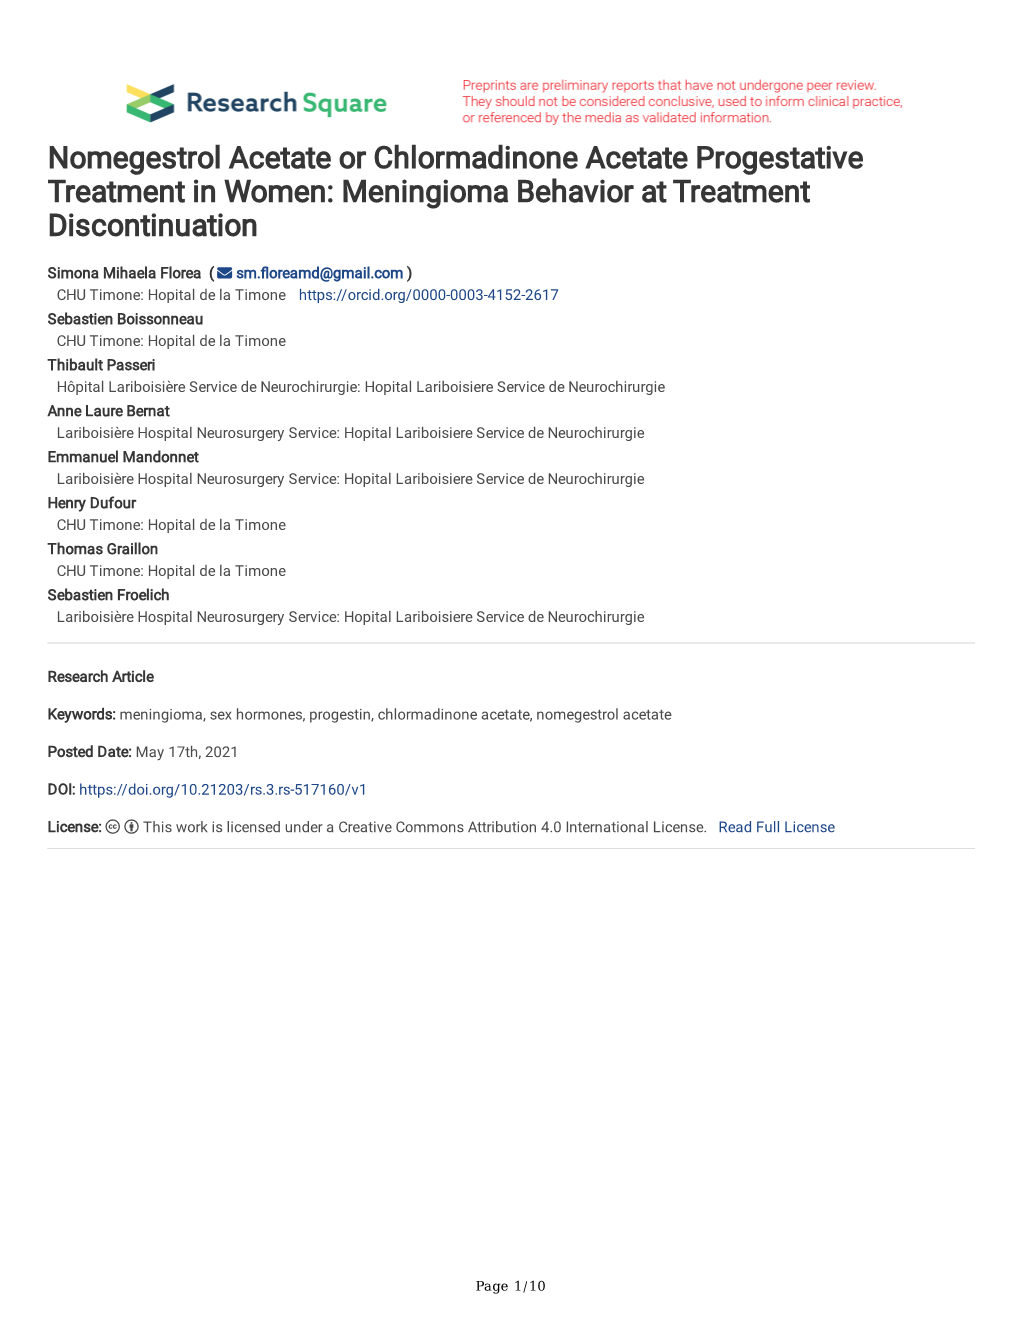 Meningioma Behavior at Treatment Discontinuation